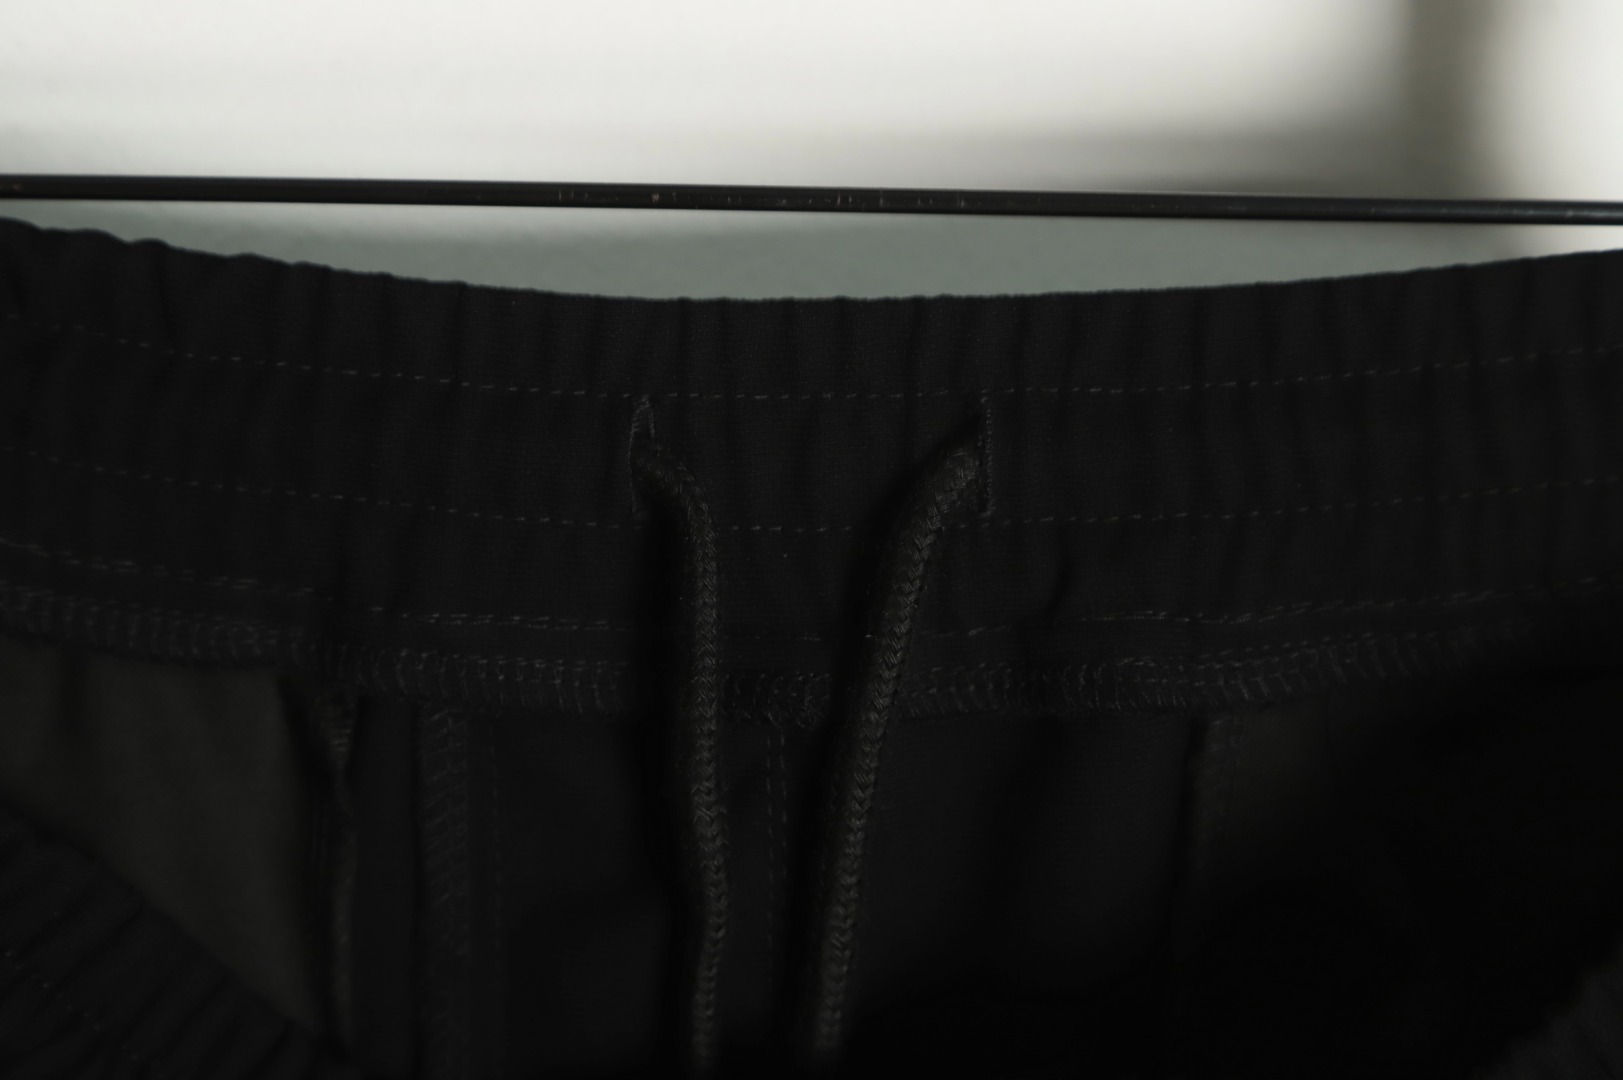 REPRESENT ズボン プレゼント ラッピングスーパーコピー カジュアルズボン HOT品質保証 パンツ 運動 人気もの ブラック_7